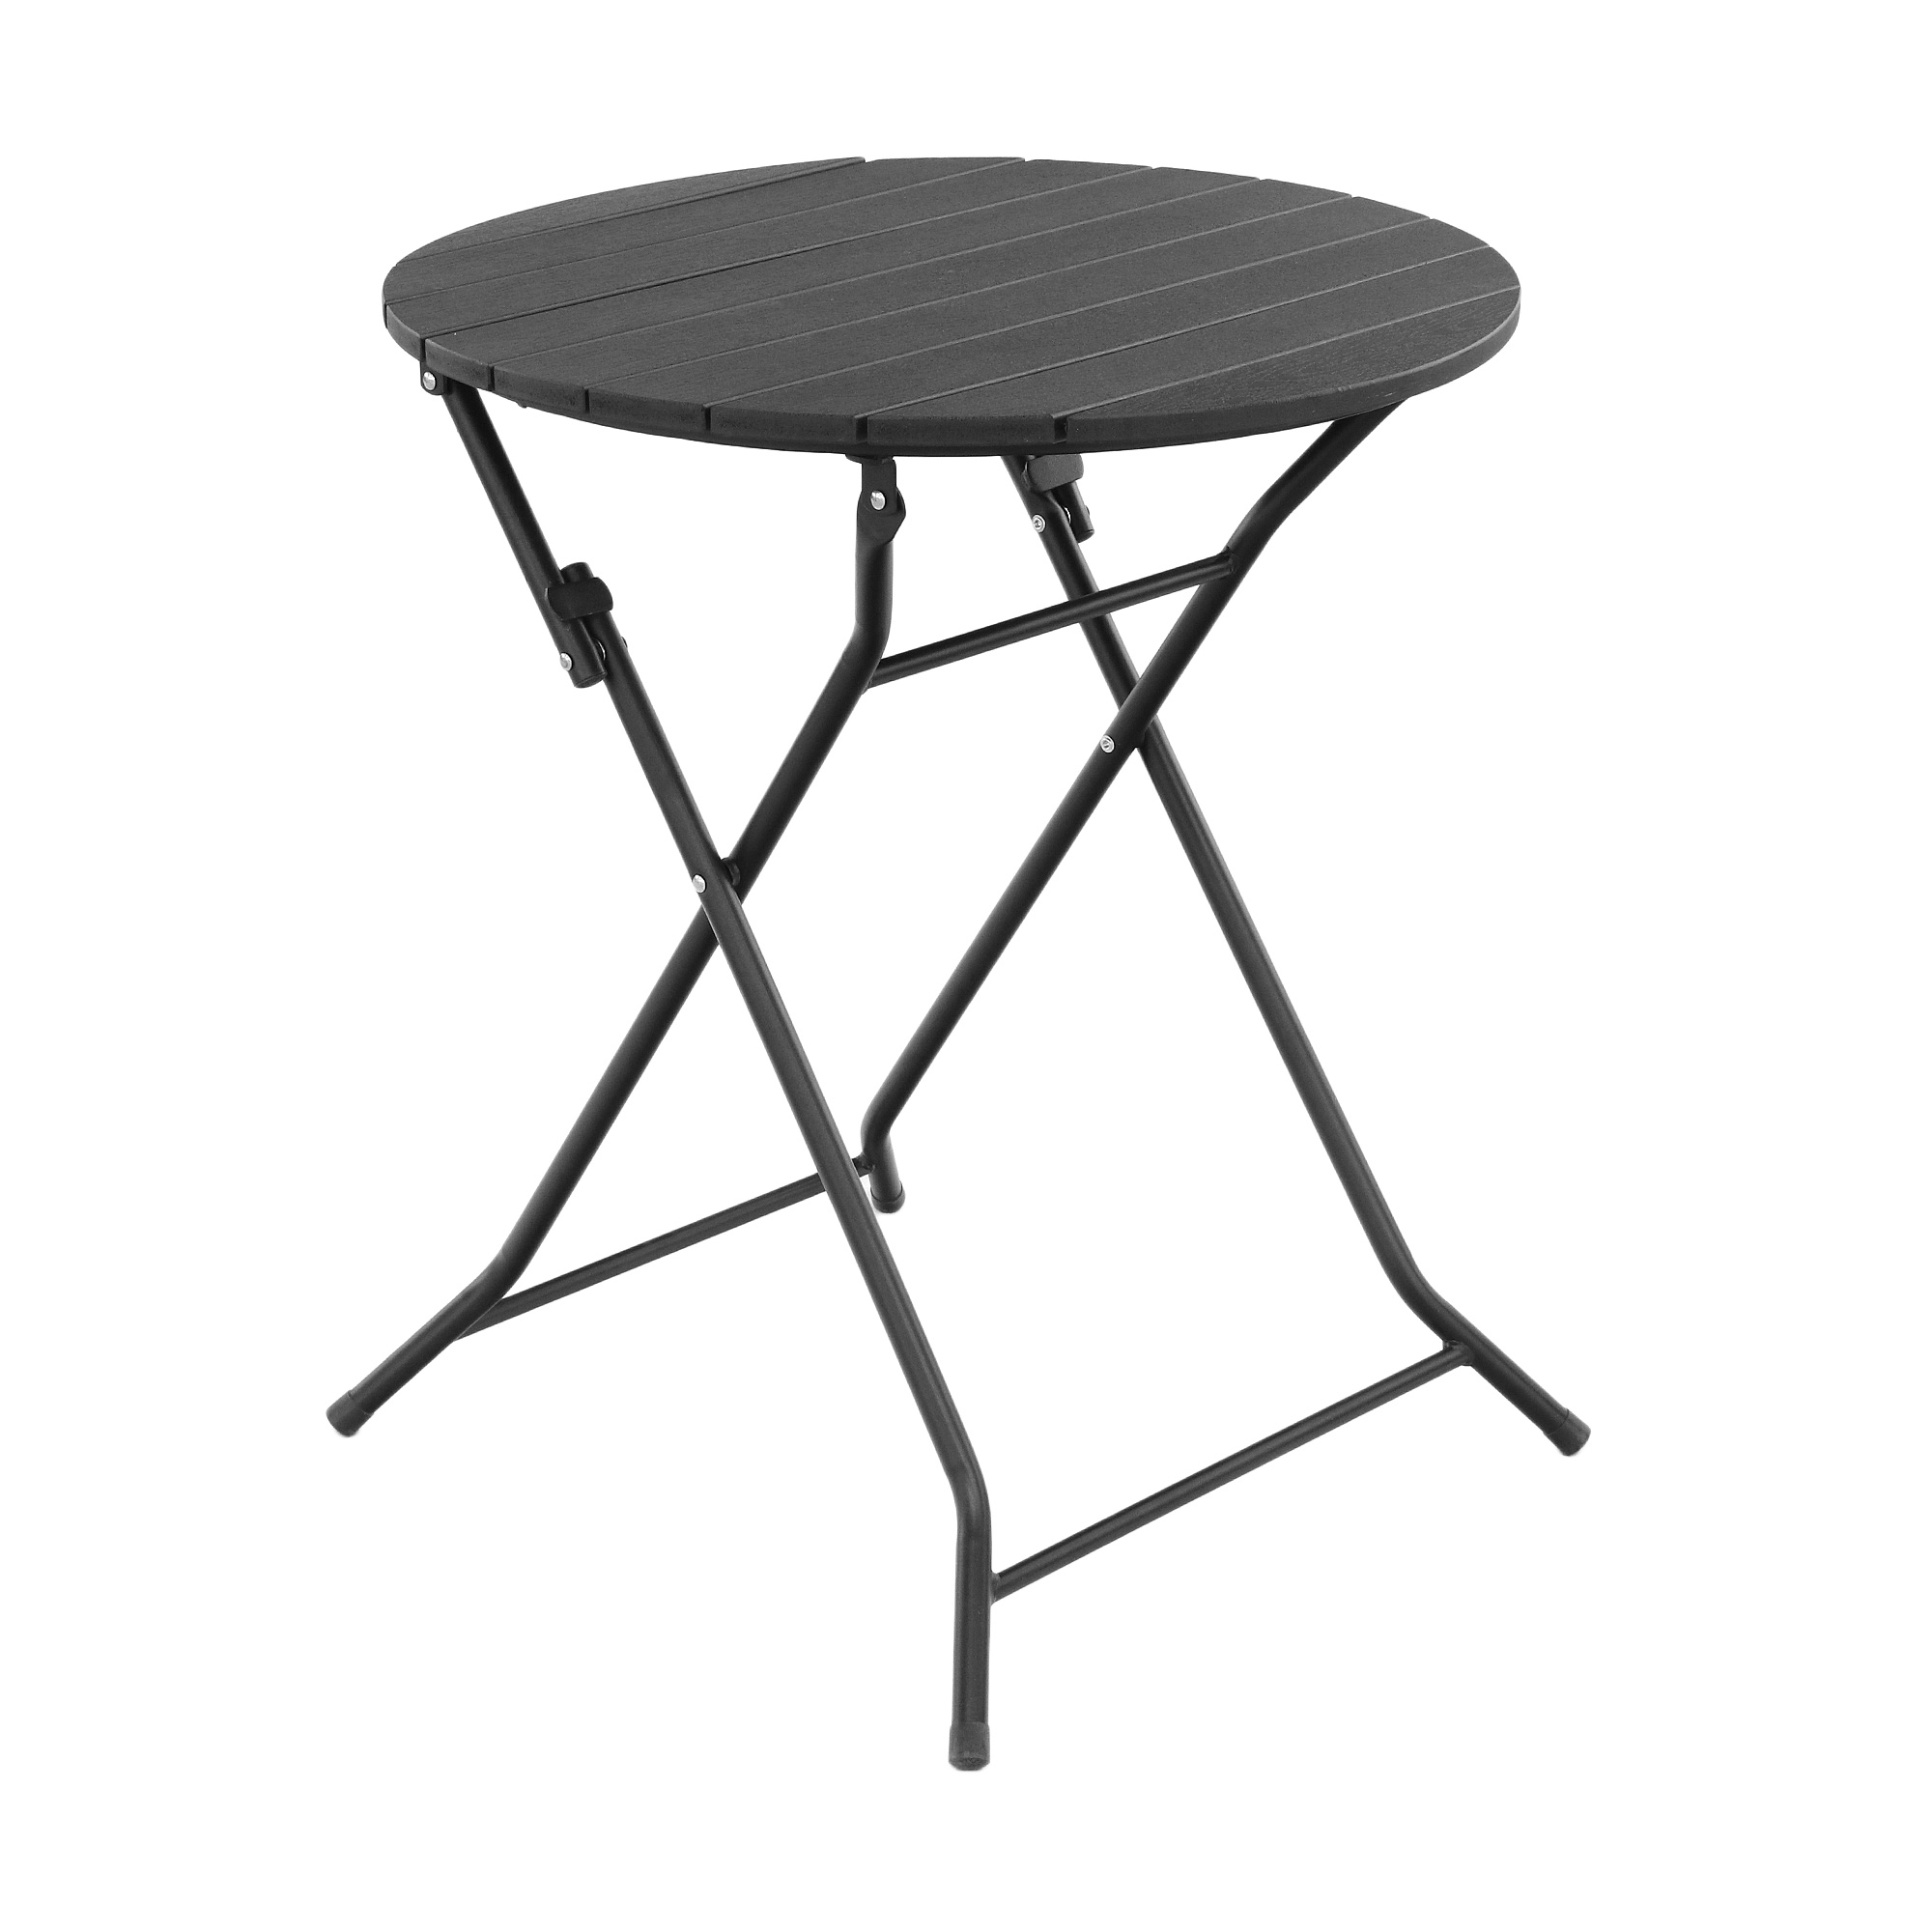 Набор садовой мебели Koopman furniture стол+2 стула, цвет черный, размер 60х60x70 см - фото 3